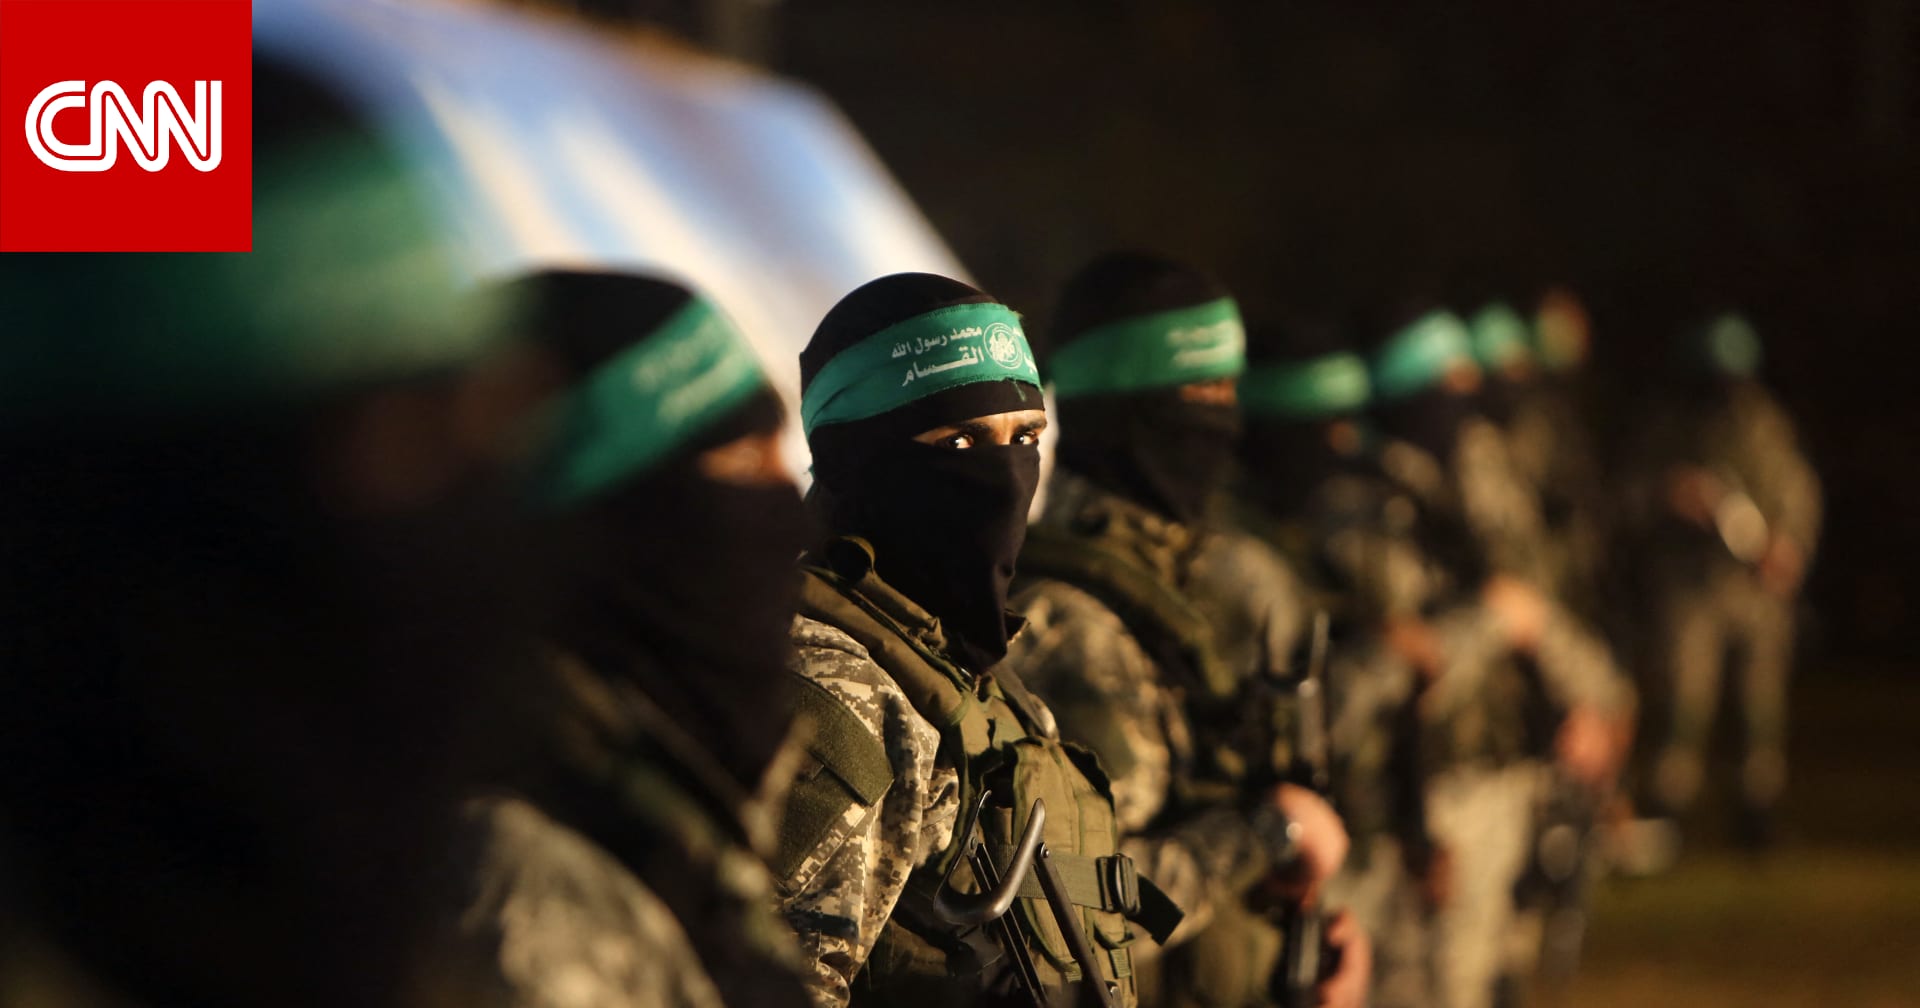 بيان من "حماس"عن لقاء وفدها مع مدير المخابرات المصرية ومفاوضات وقف إطلاق النار